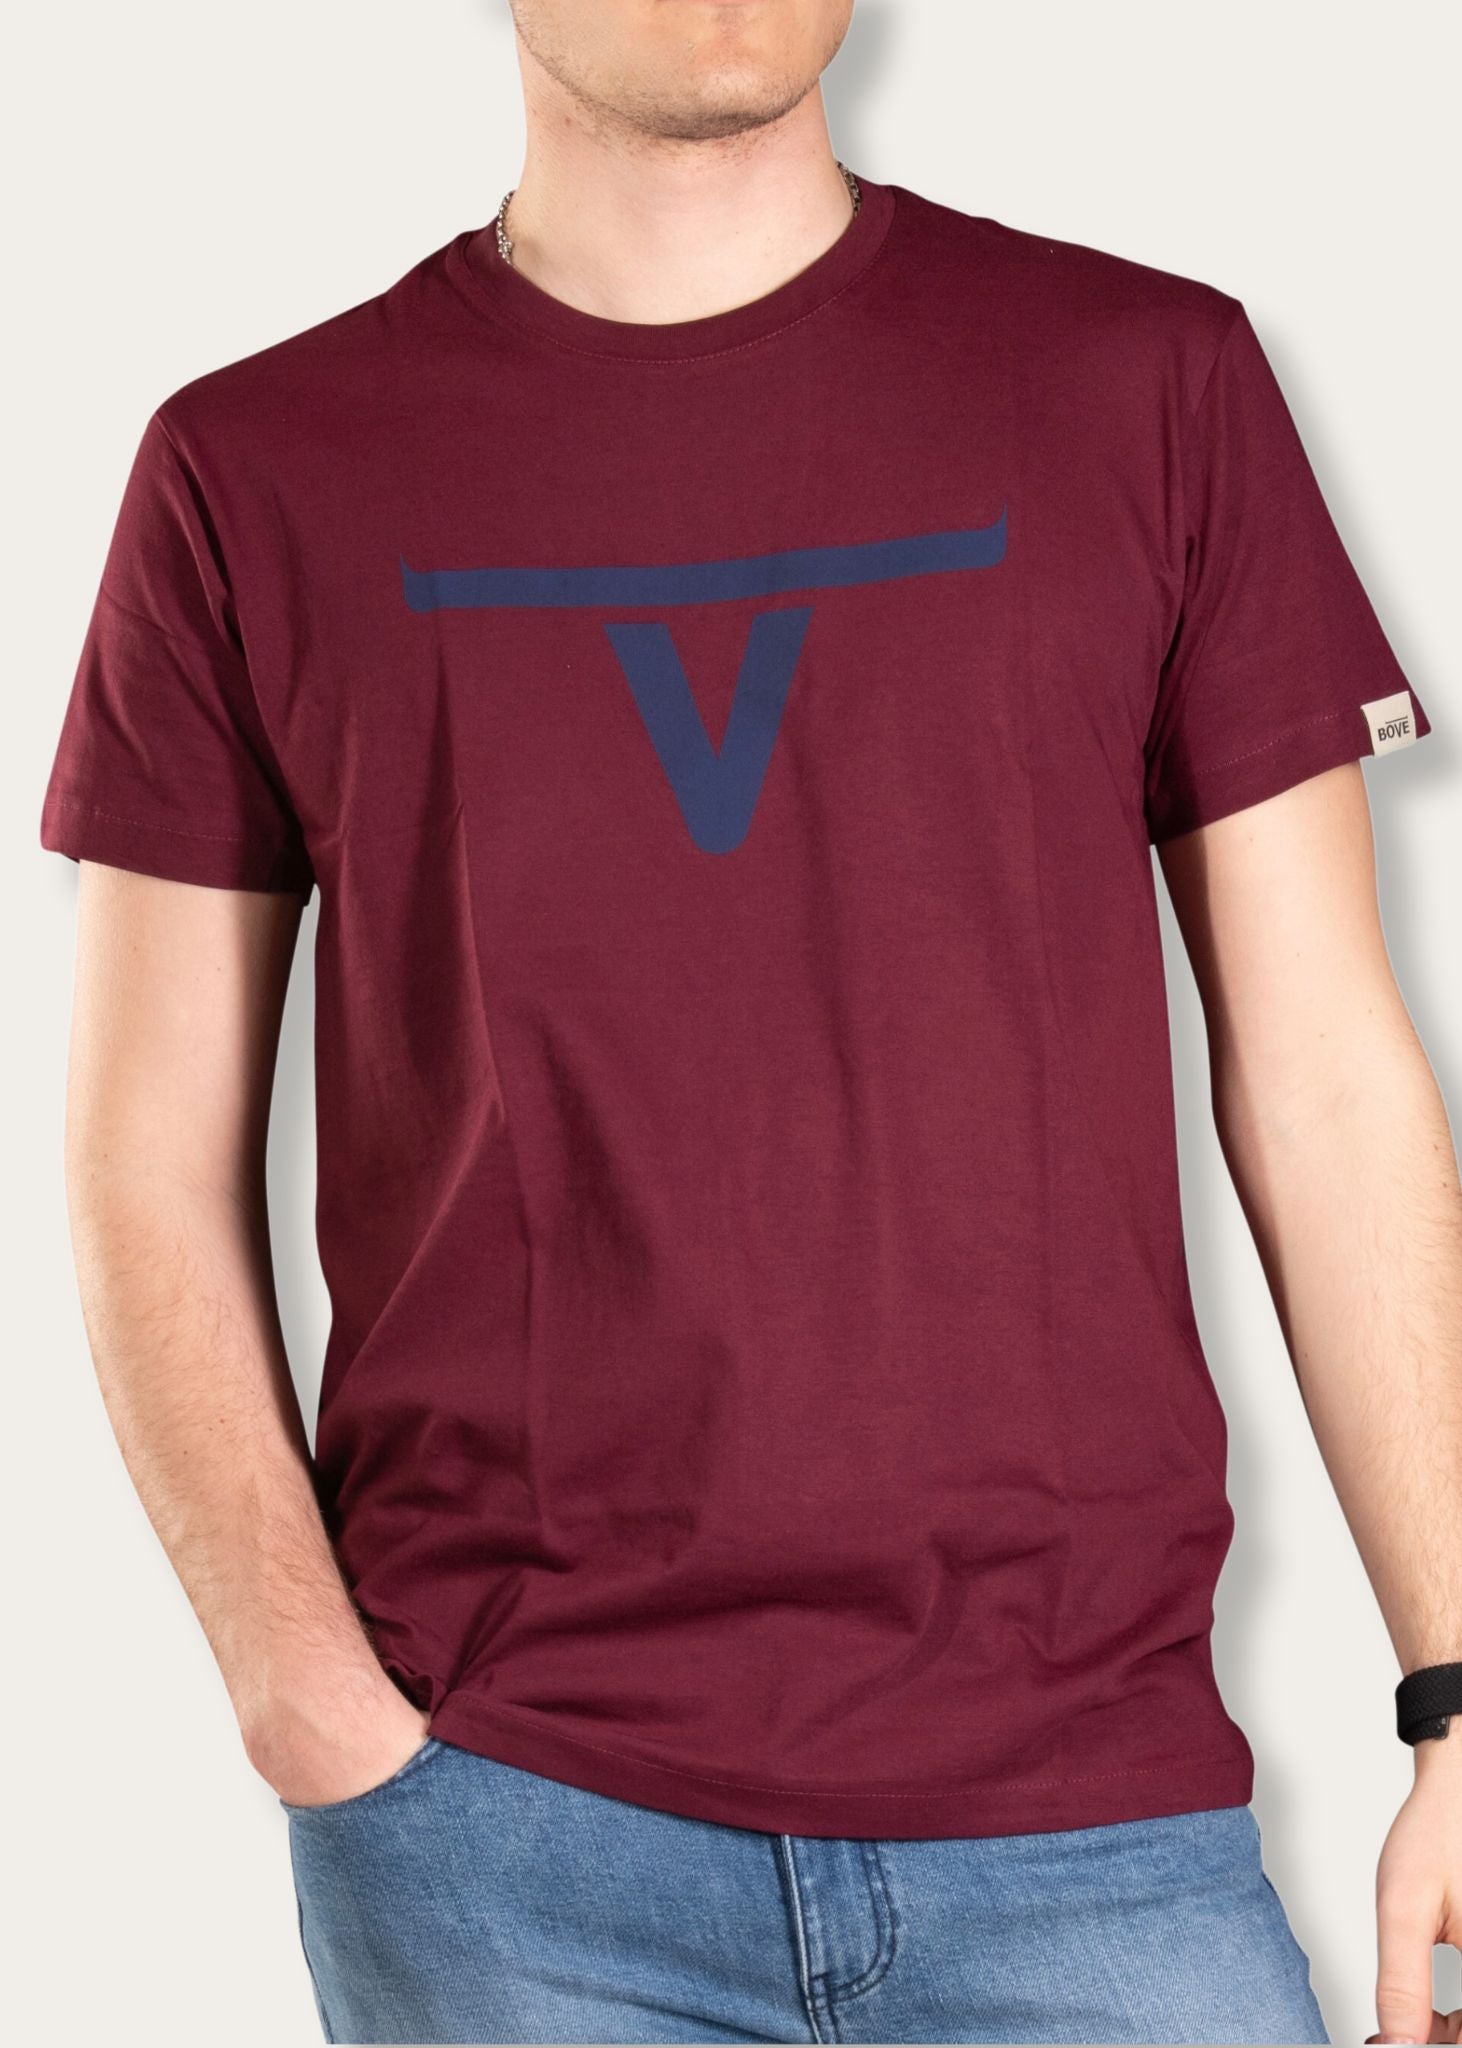 Burgunderfarbenes T-Shirt von Bove